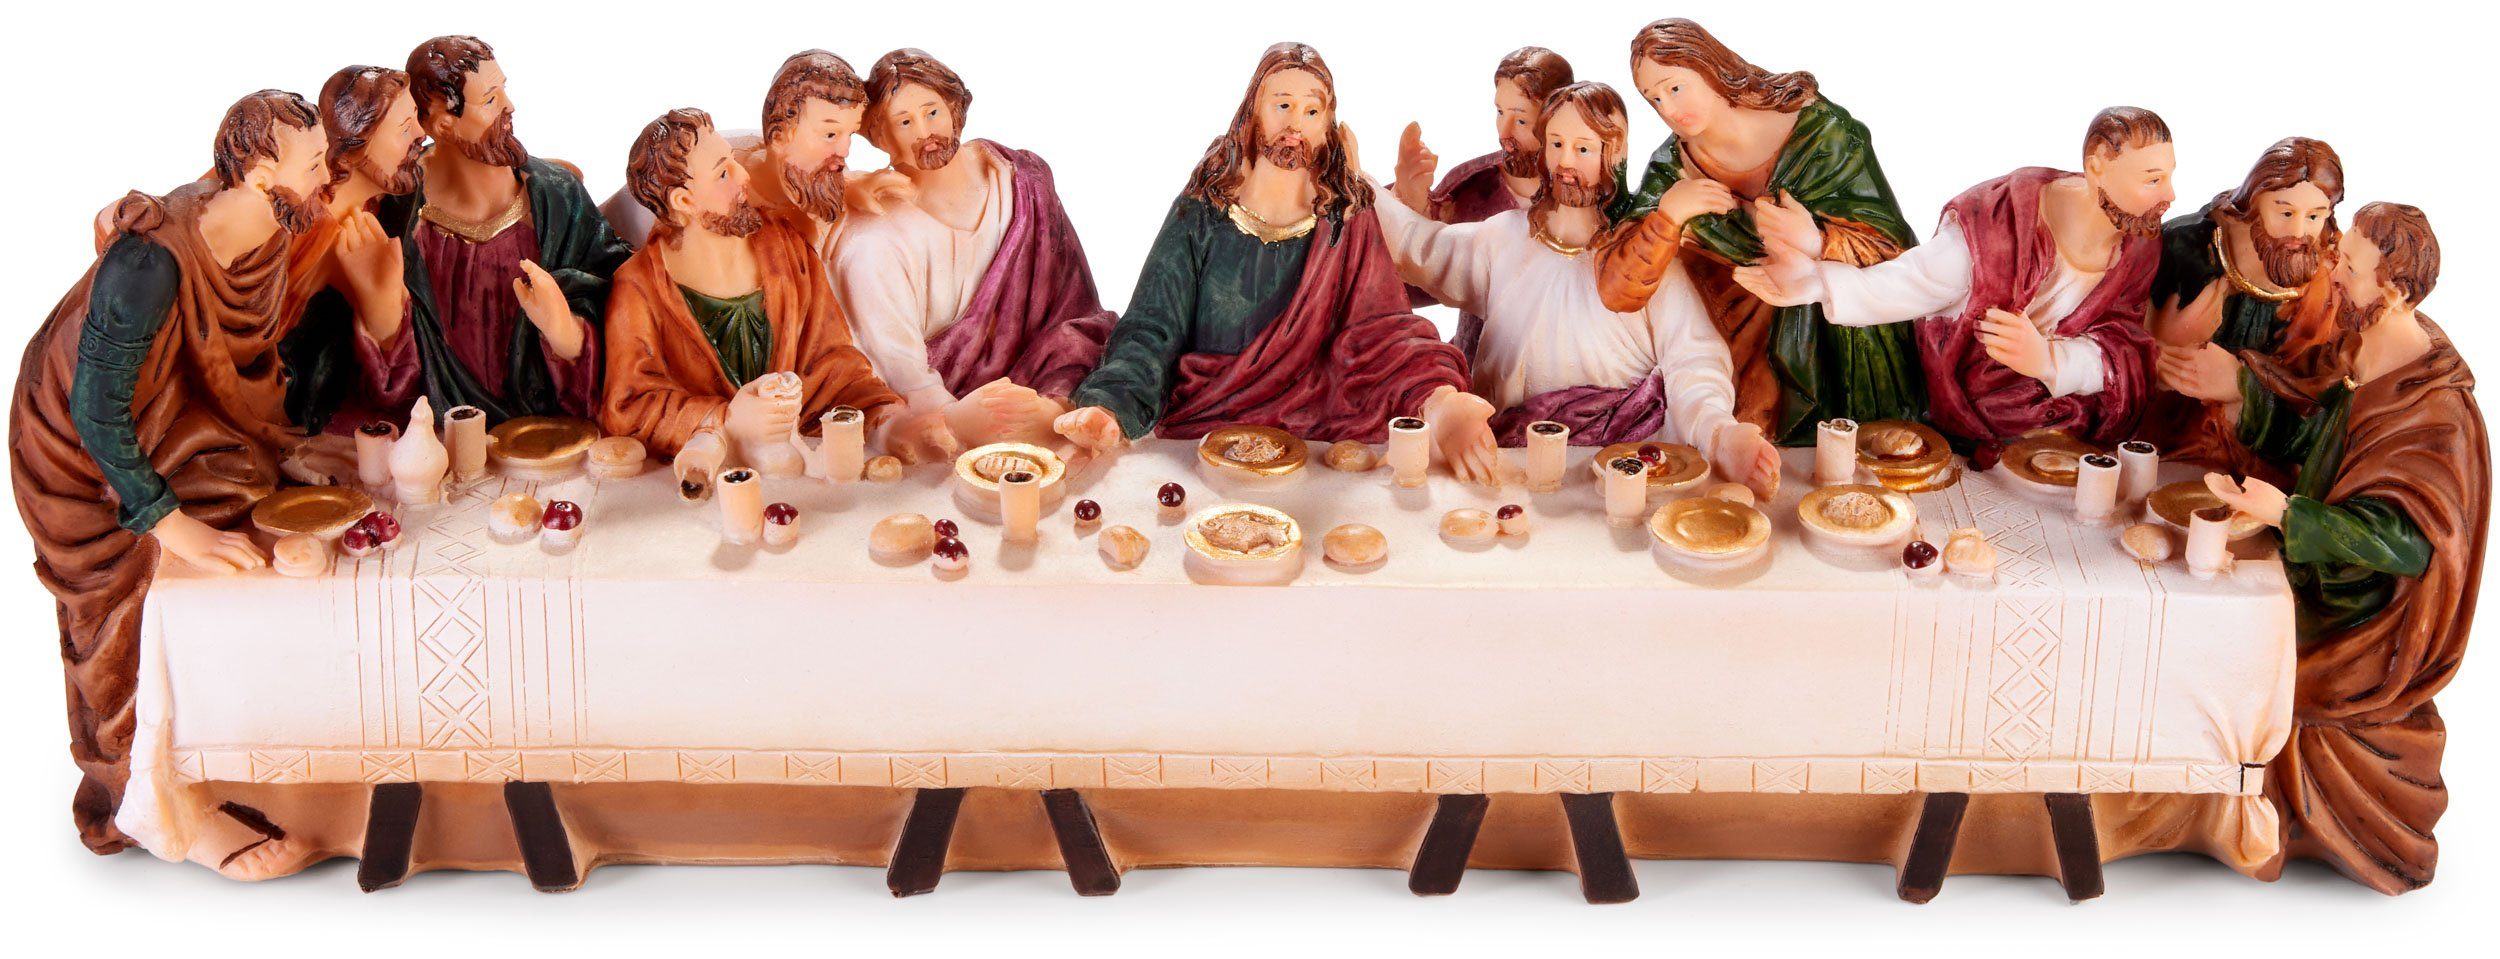 BRUBAKER Weihnachtsfigur Das letzte Abendmahl - Jesus und seine 12 Jünger am Tisch (36 cm Weihnachtsfigur mit handbemalten Figuren aus Polyresin, 1 St), Abendmahlszene Weihnachtsdekoration - Tischdekoration